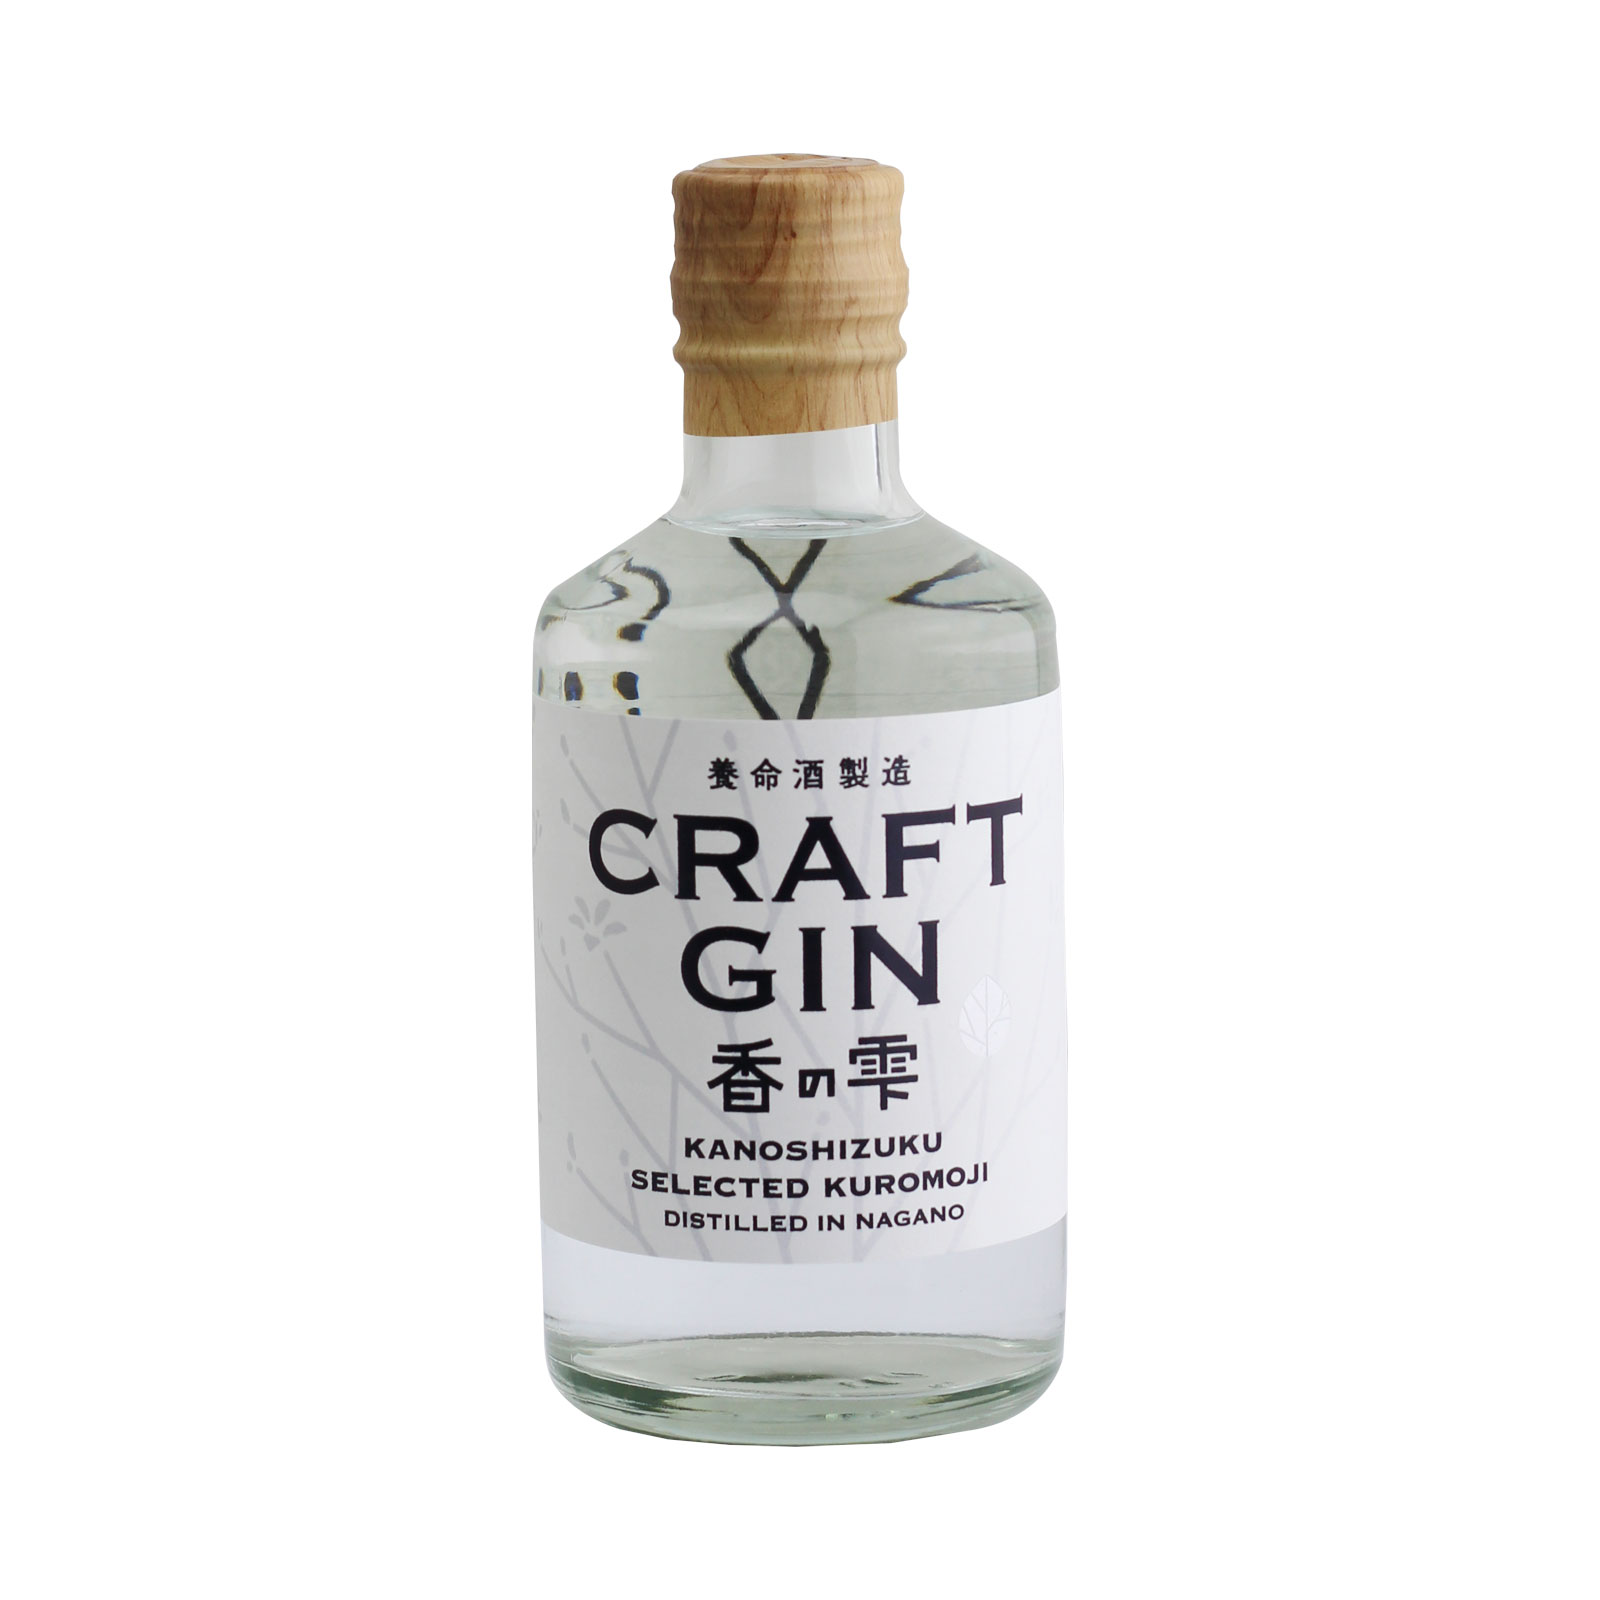 Craft Gin Kanoshizuku 37% Spirit 300ml(By Yomeishu) – Yomeishu SG